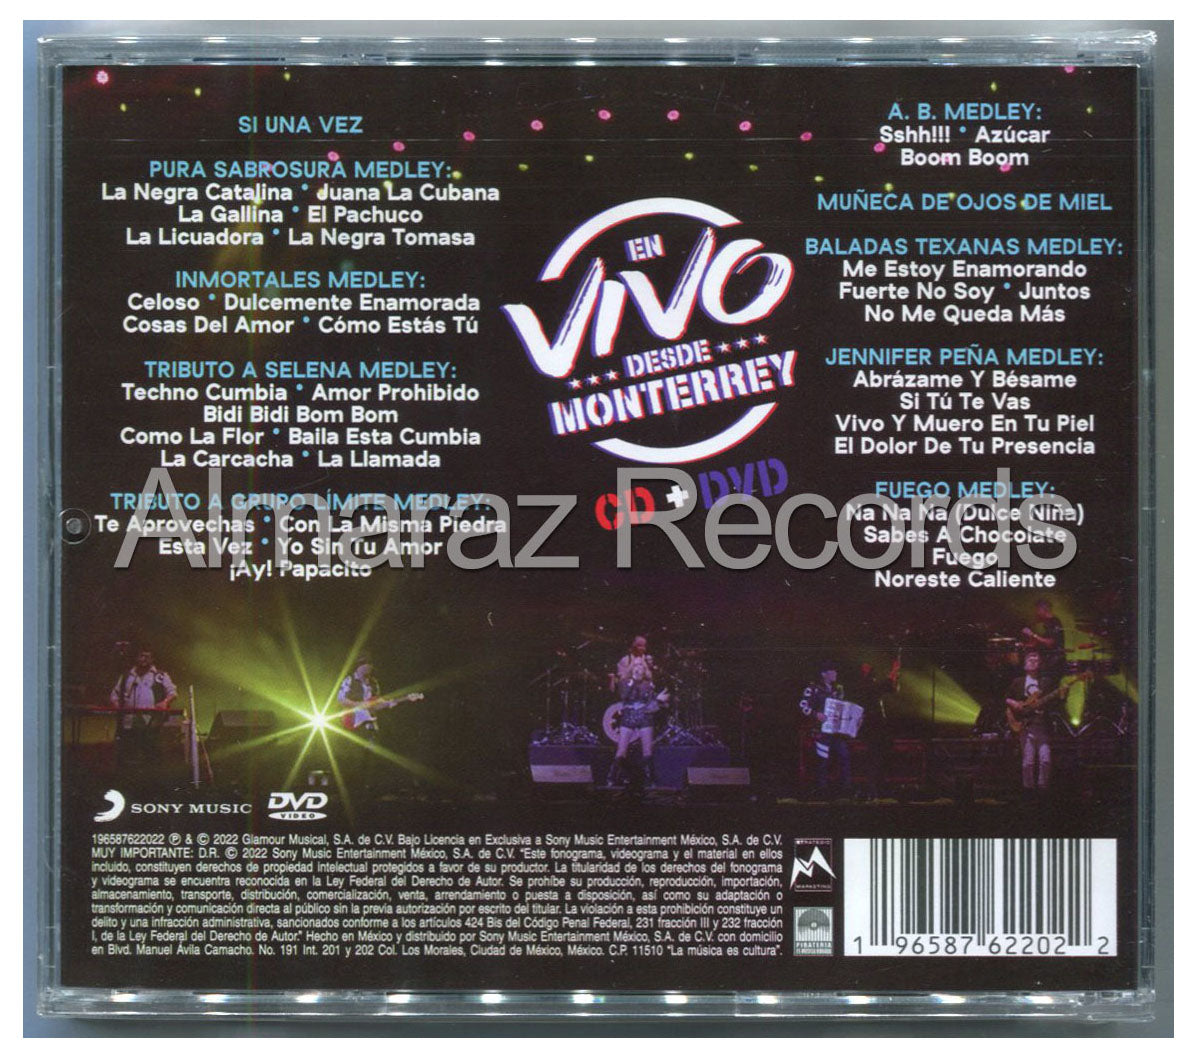 La Casetera En Vivo Desde Moterrey CD+DVD